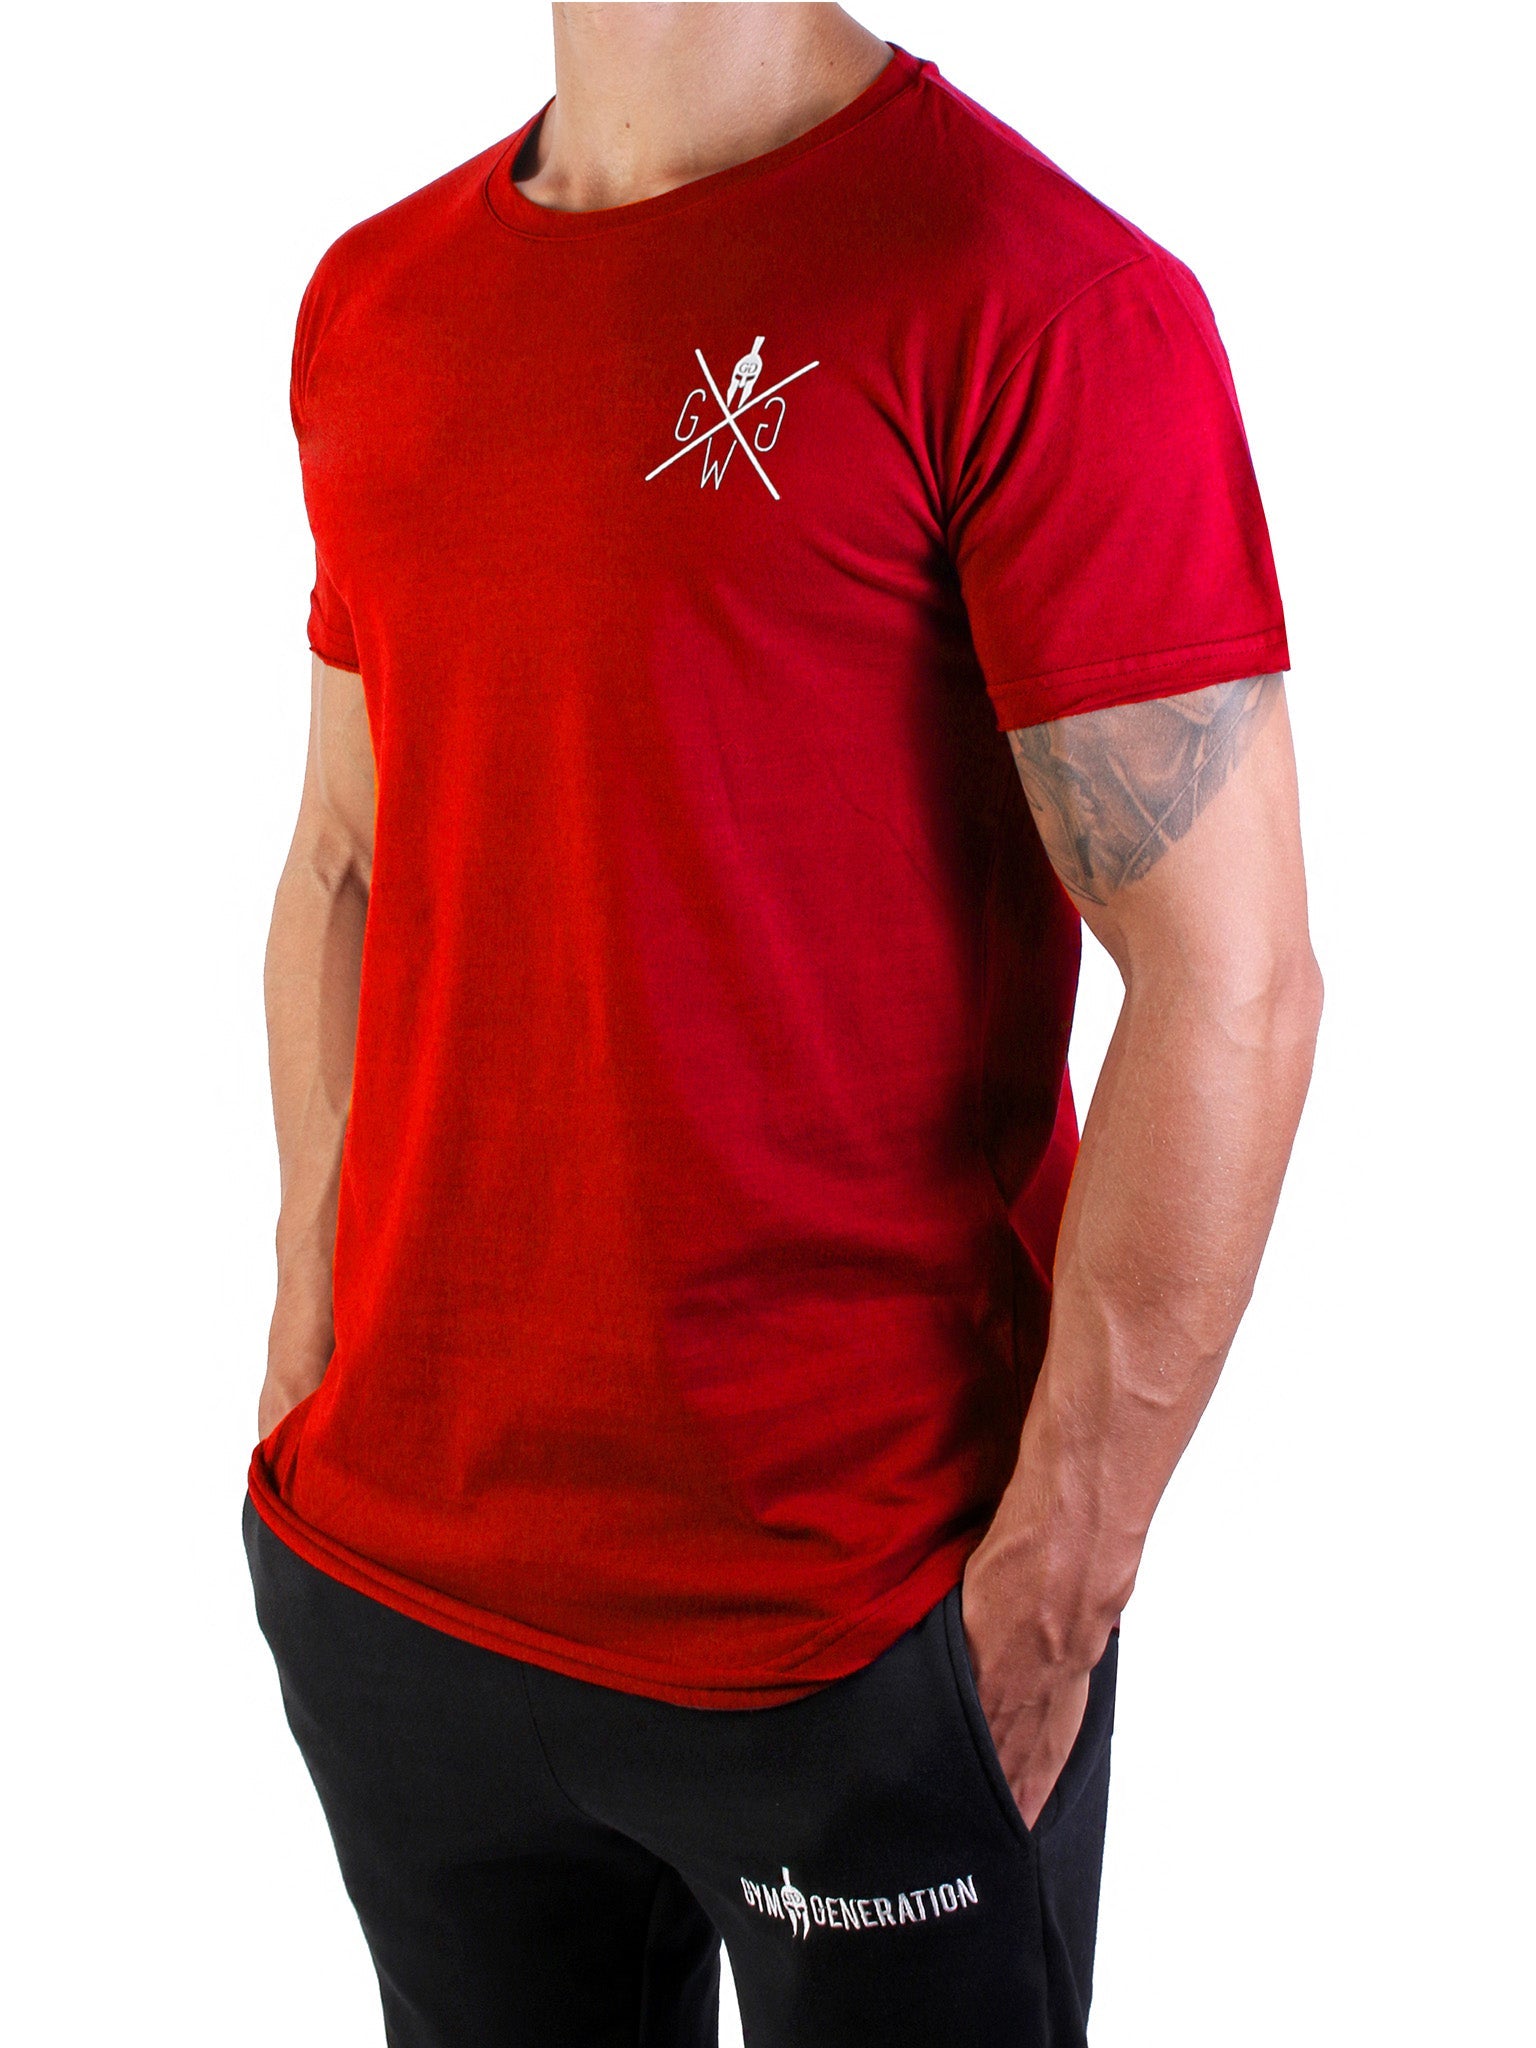 Sportliches und modisches rotes T-Shirt von Gym Generation, ein Must-Have für jeden modebewussten Mann.